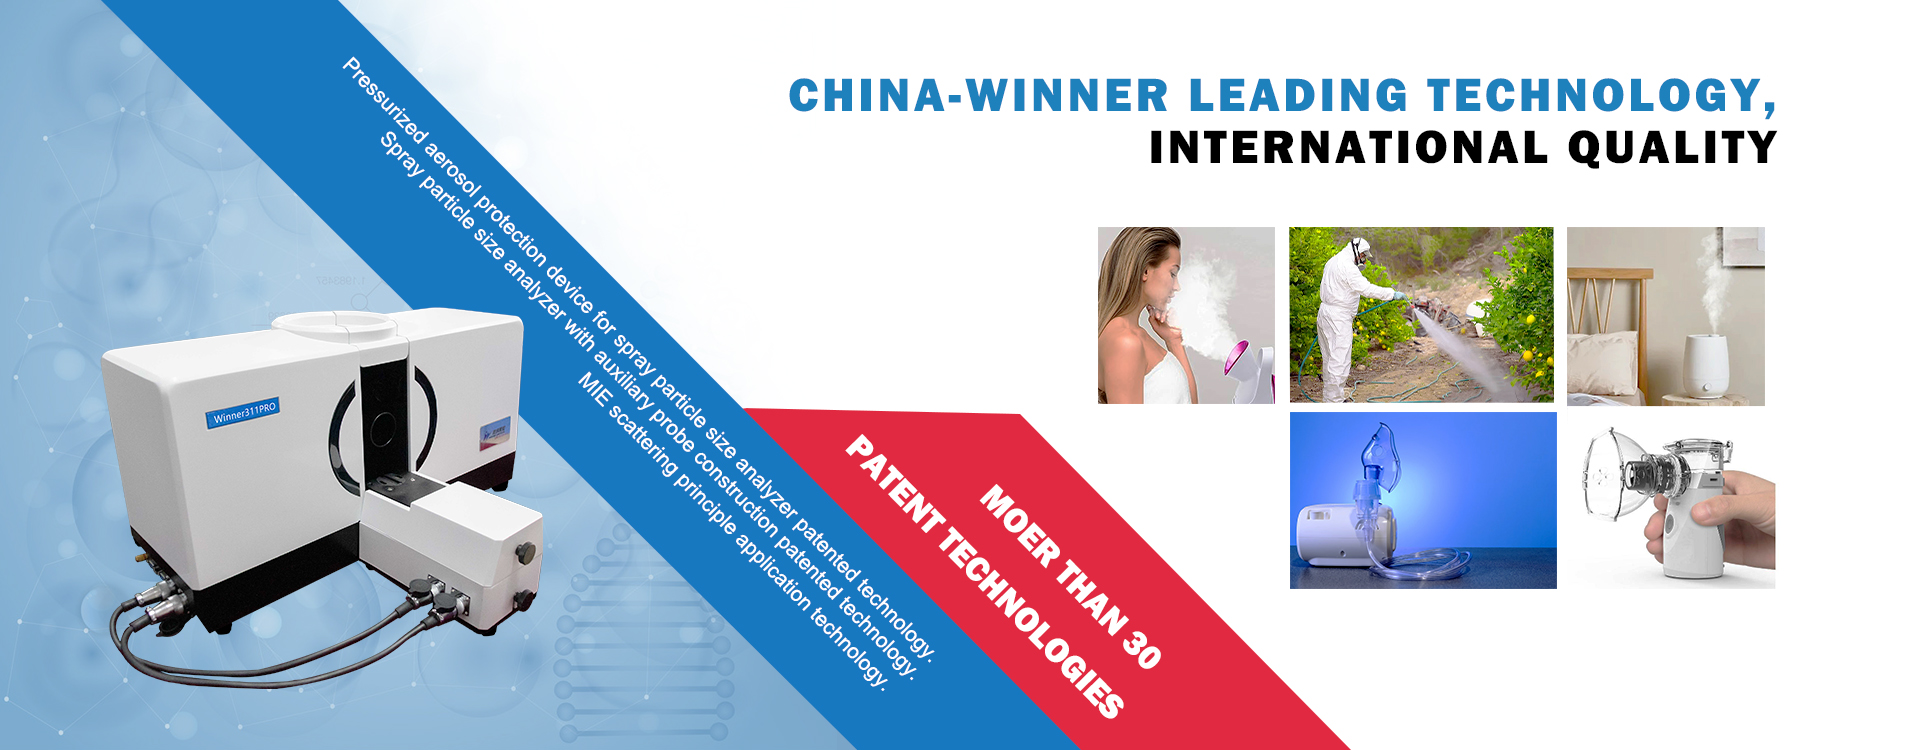 China-Winner Leading Technology